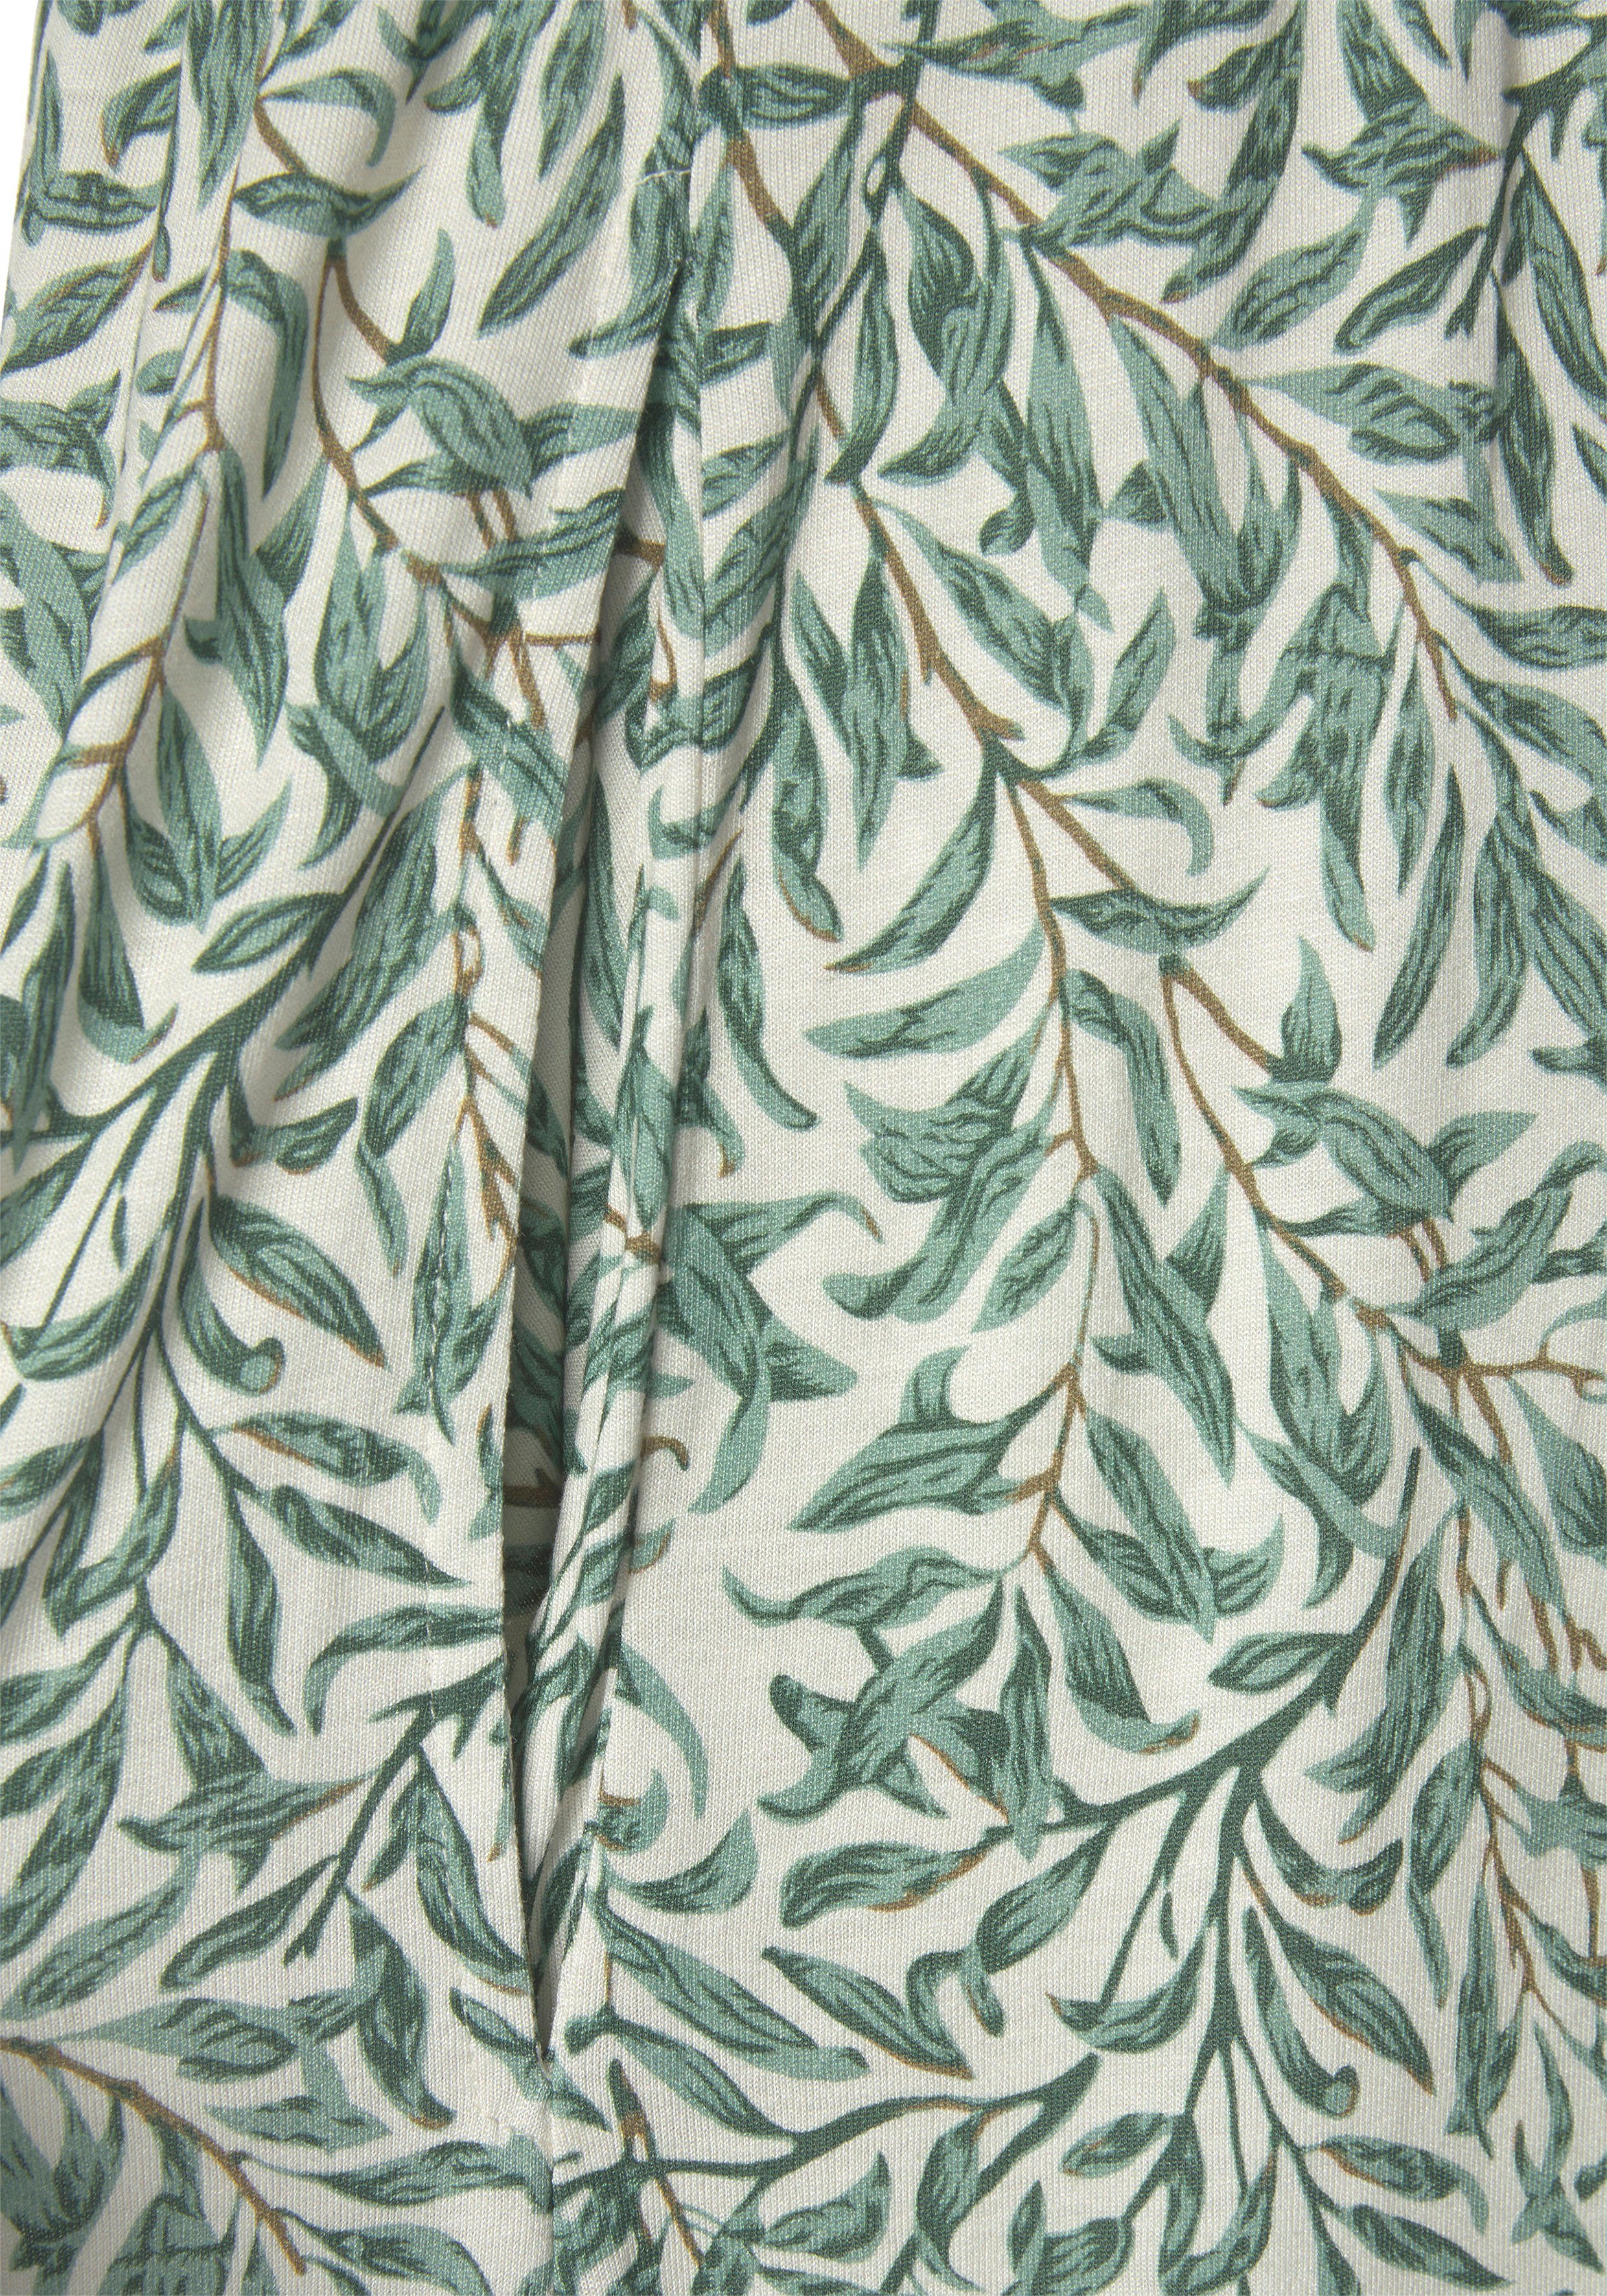 Blätterdruck grün bedruckt mit Jerseykleid Beachtime